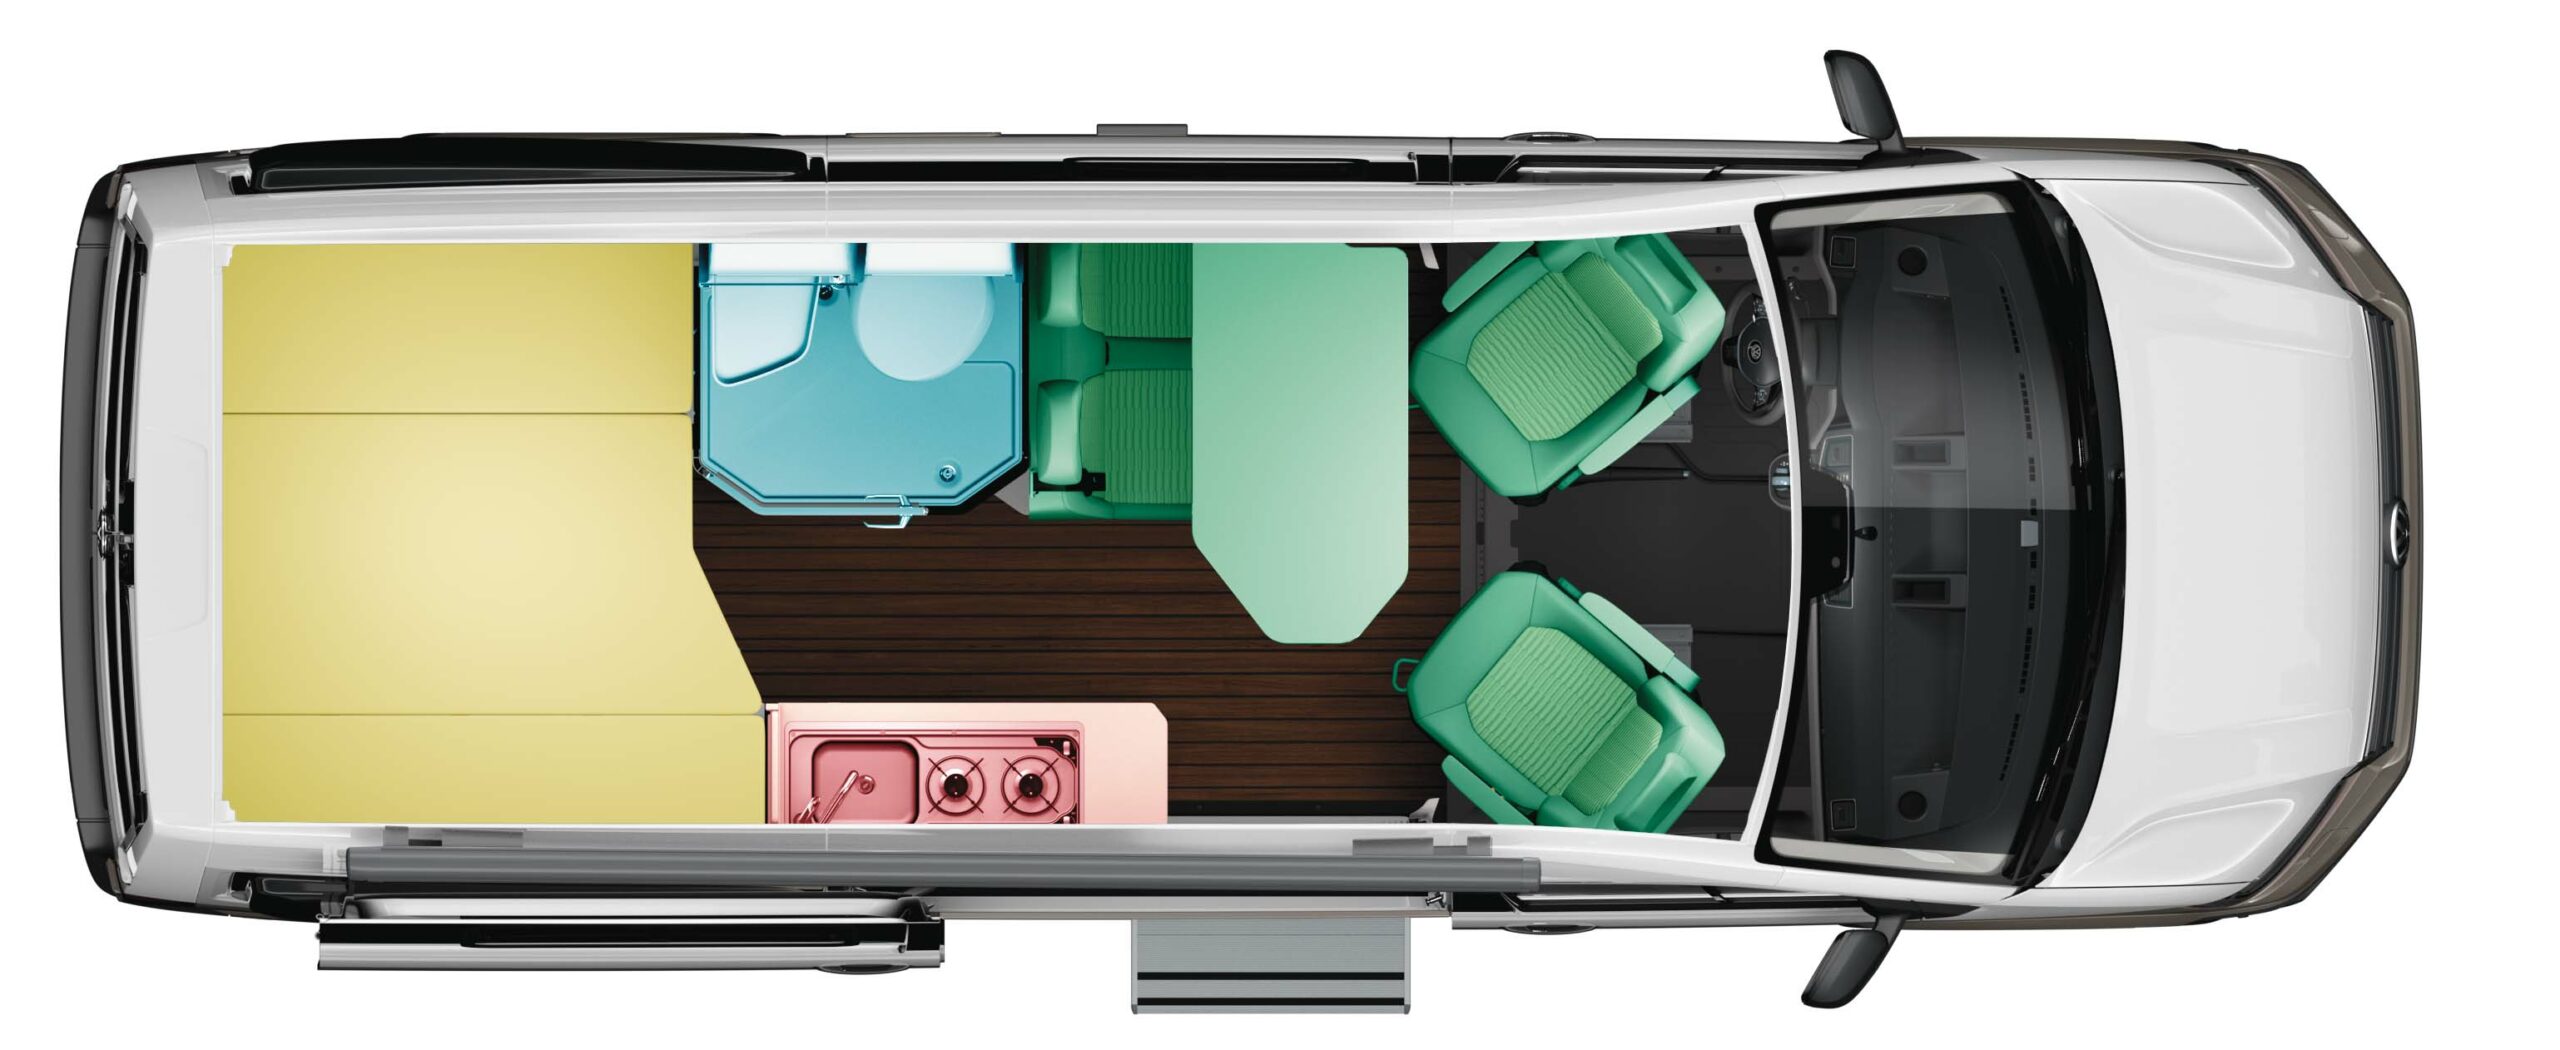 Volkswagen Grand California 600 2020 Campervan Floorplan